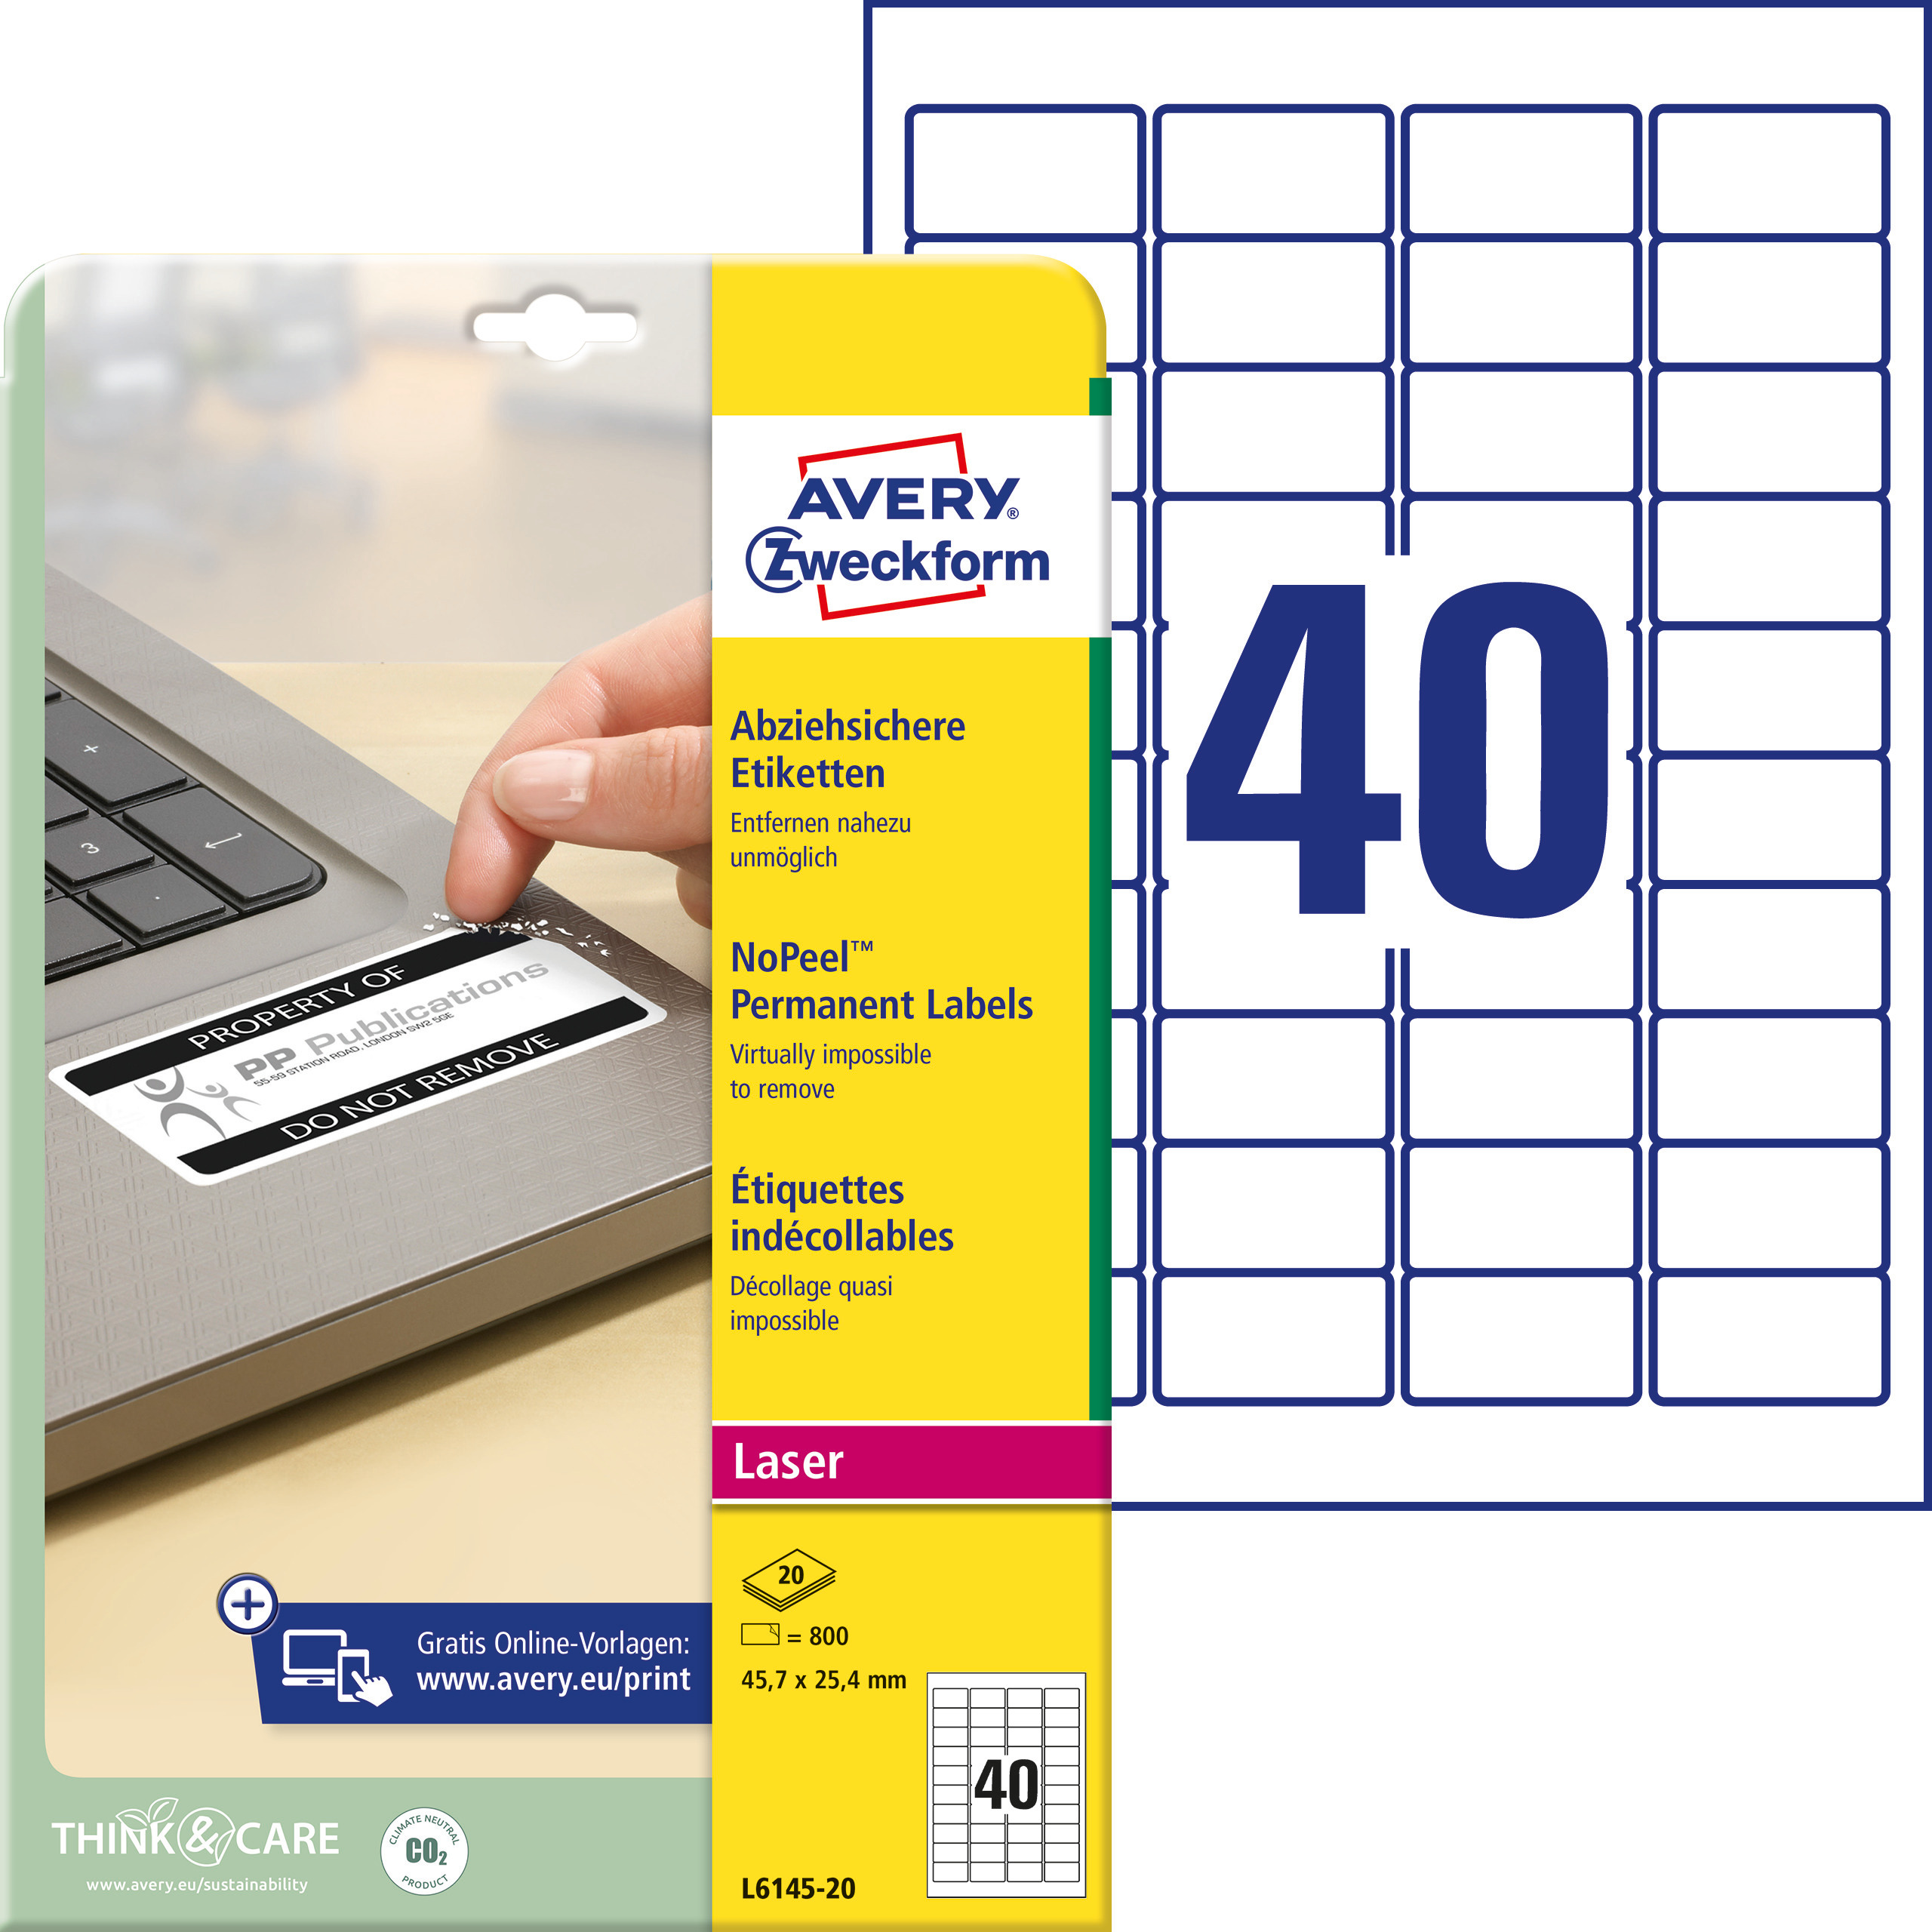 Samoprzylepne etykiety Nopeel foliowe akrylowe do drukarek laserowych monochromatycznych - 40 etykiet na arkuszu